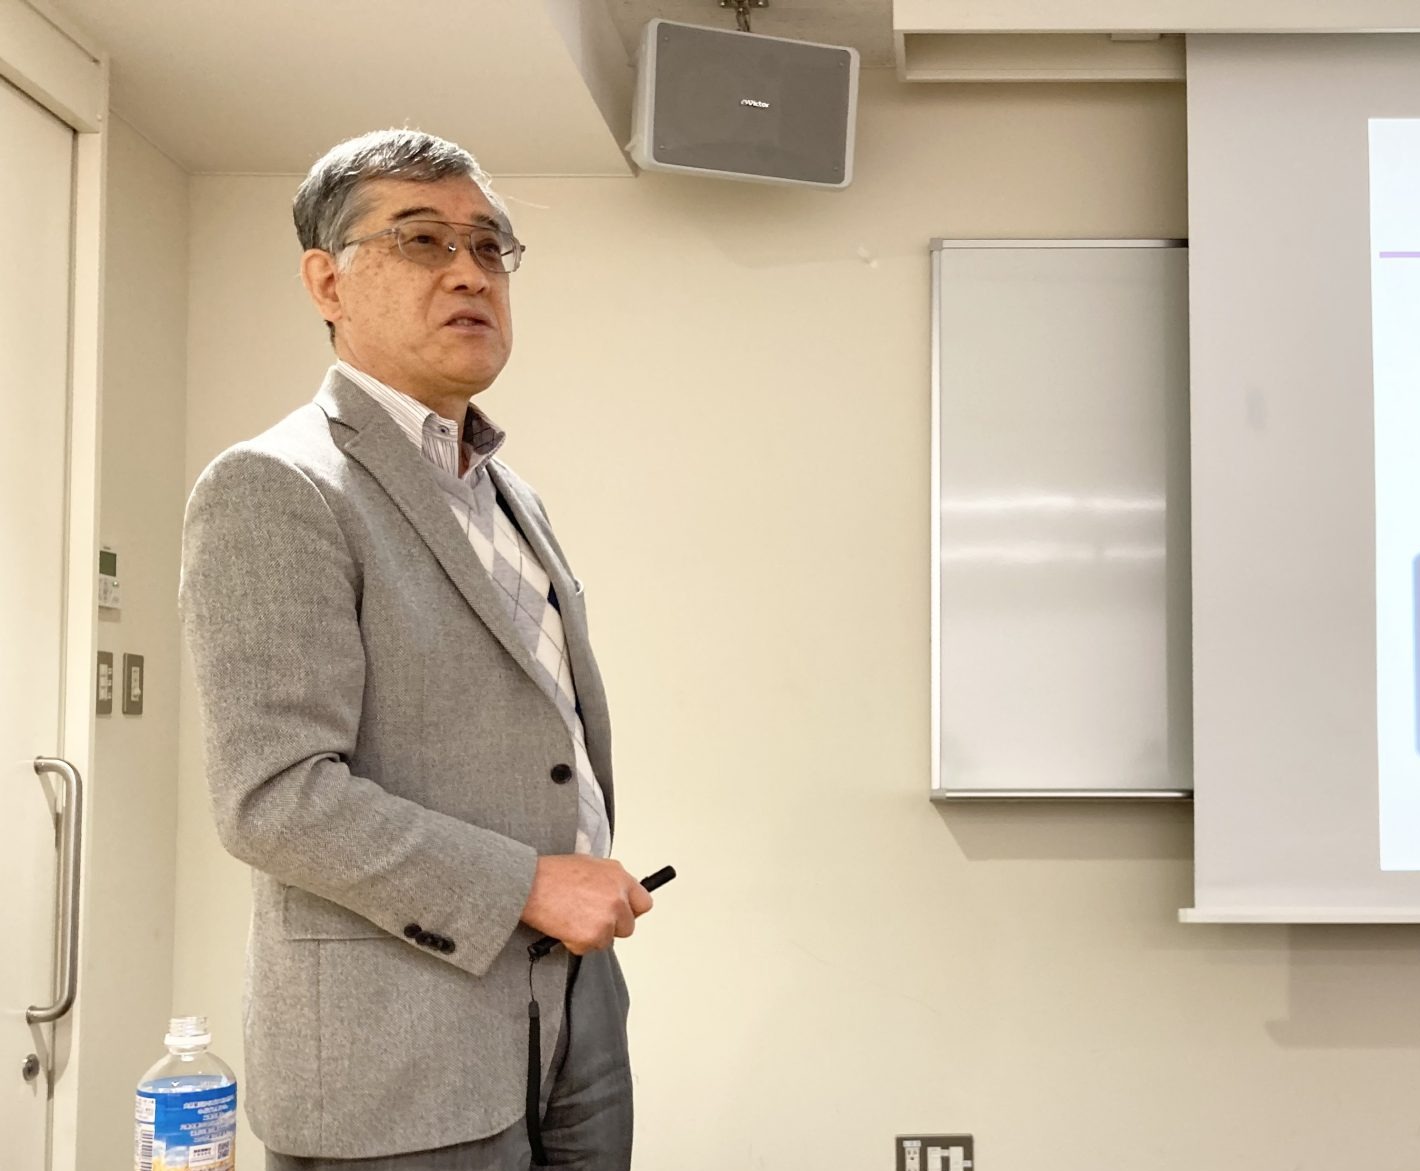 Prof. Yamashita Masahiro gave a lecture at UT